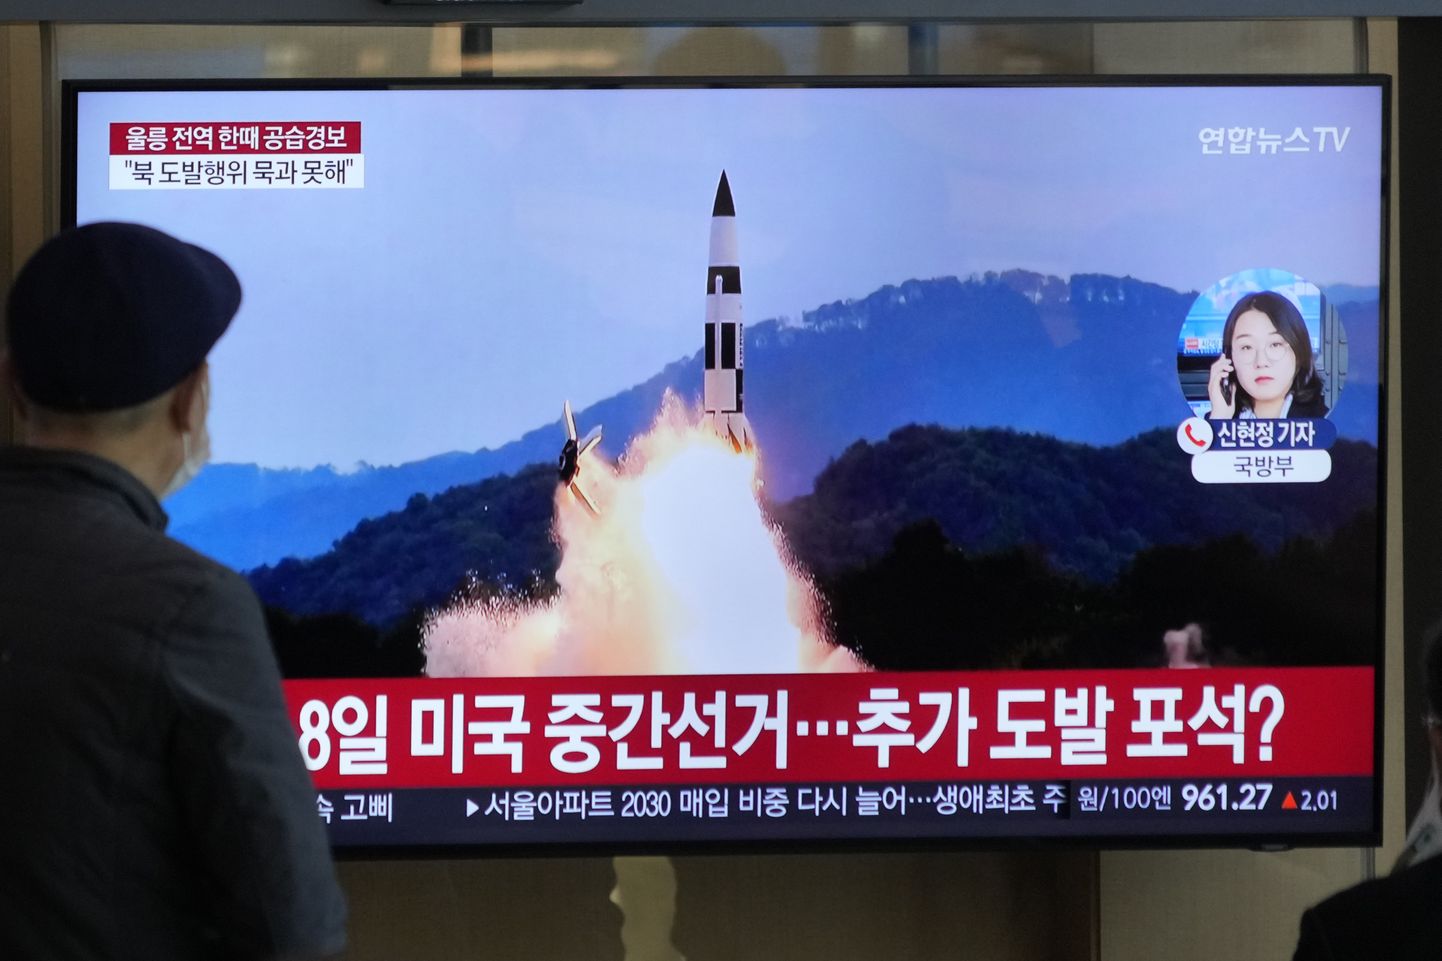 Lõuna-Korea teleuudiste lõik Põhja-Korea raketikatsetustest.